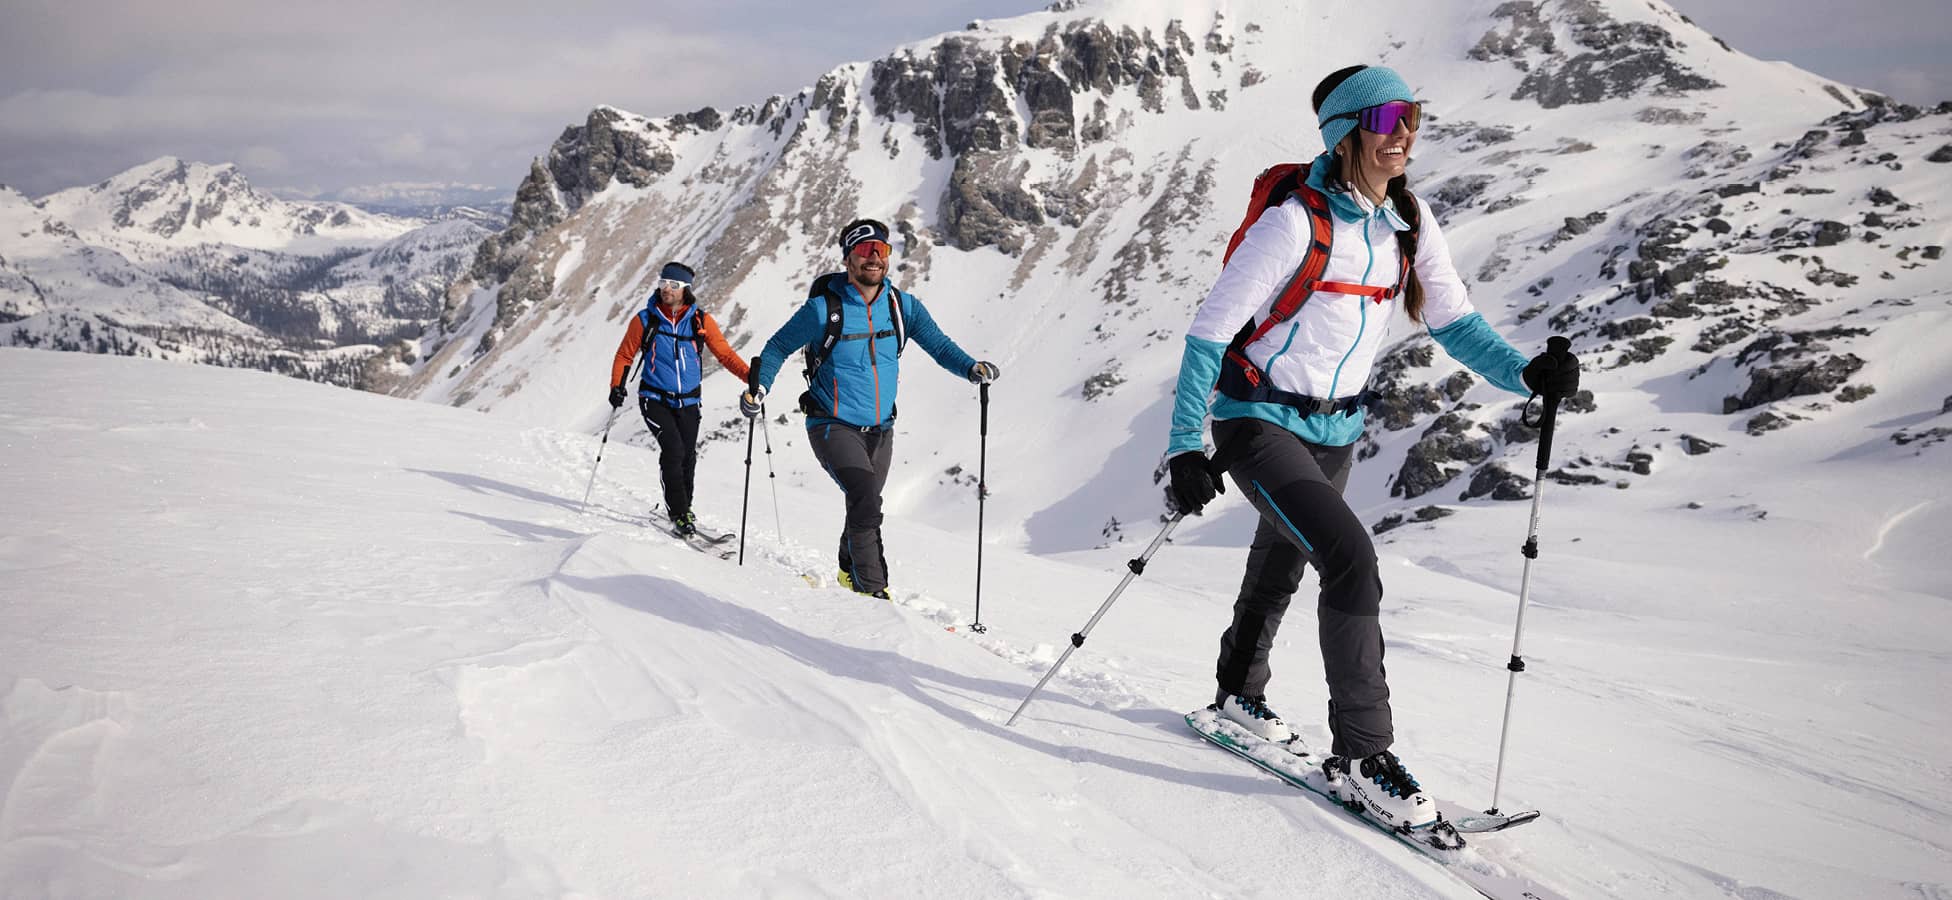 Skitourengeher im verschneiten Gebirge